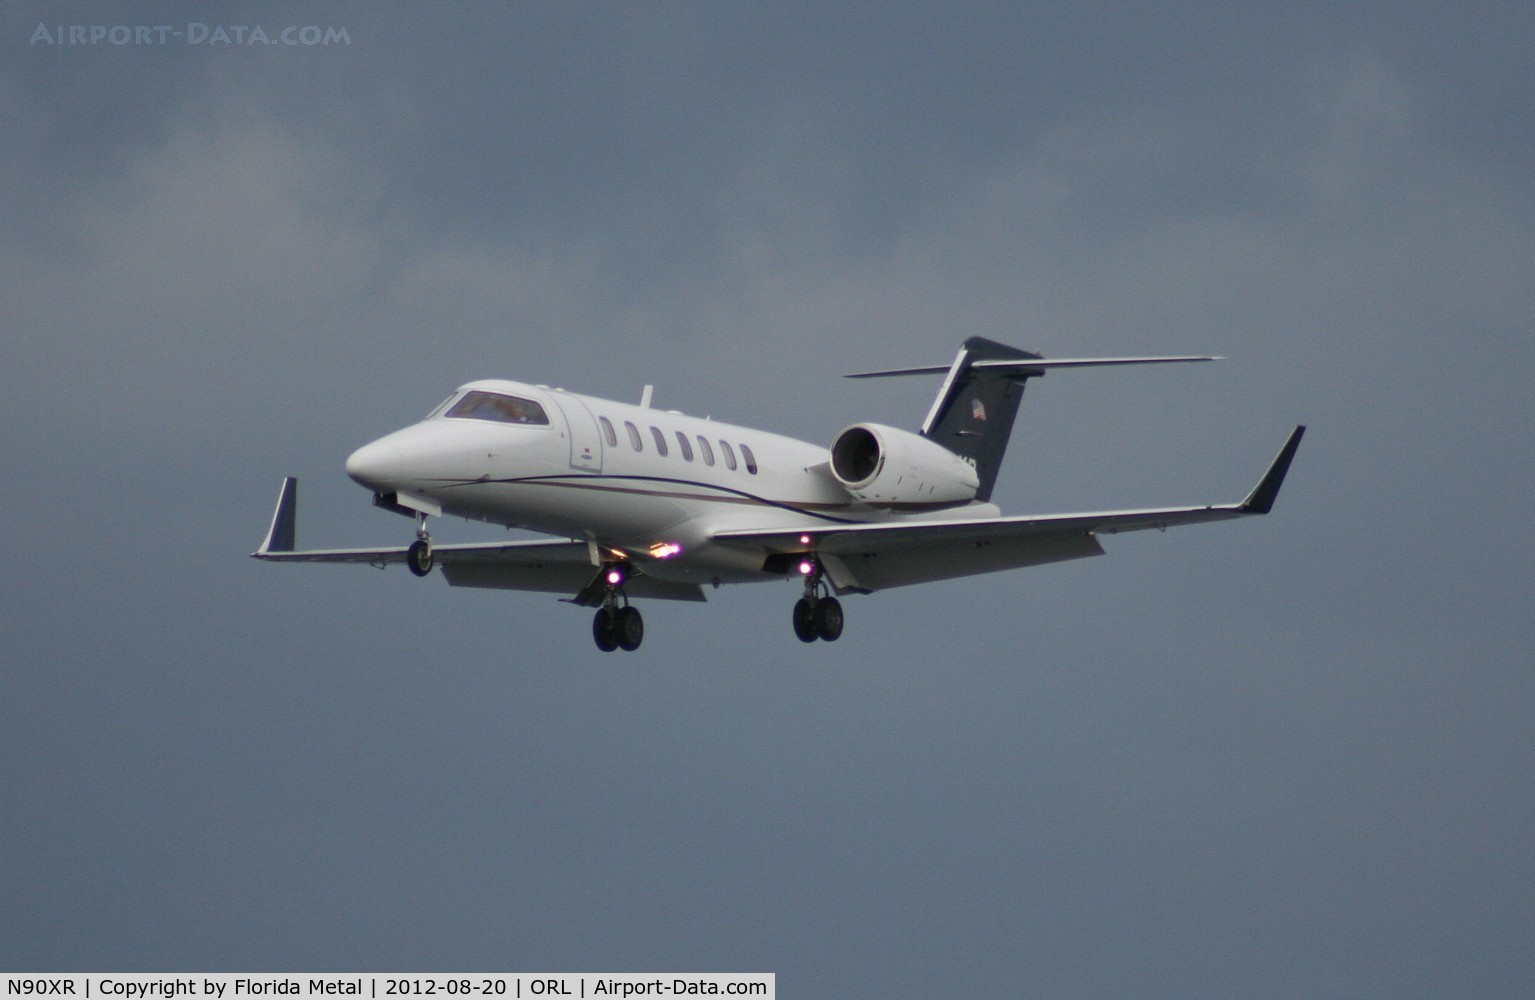 N90XR, 2007 Learjet Inc 45 C/N 2090, Lear 40